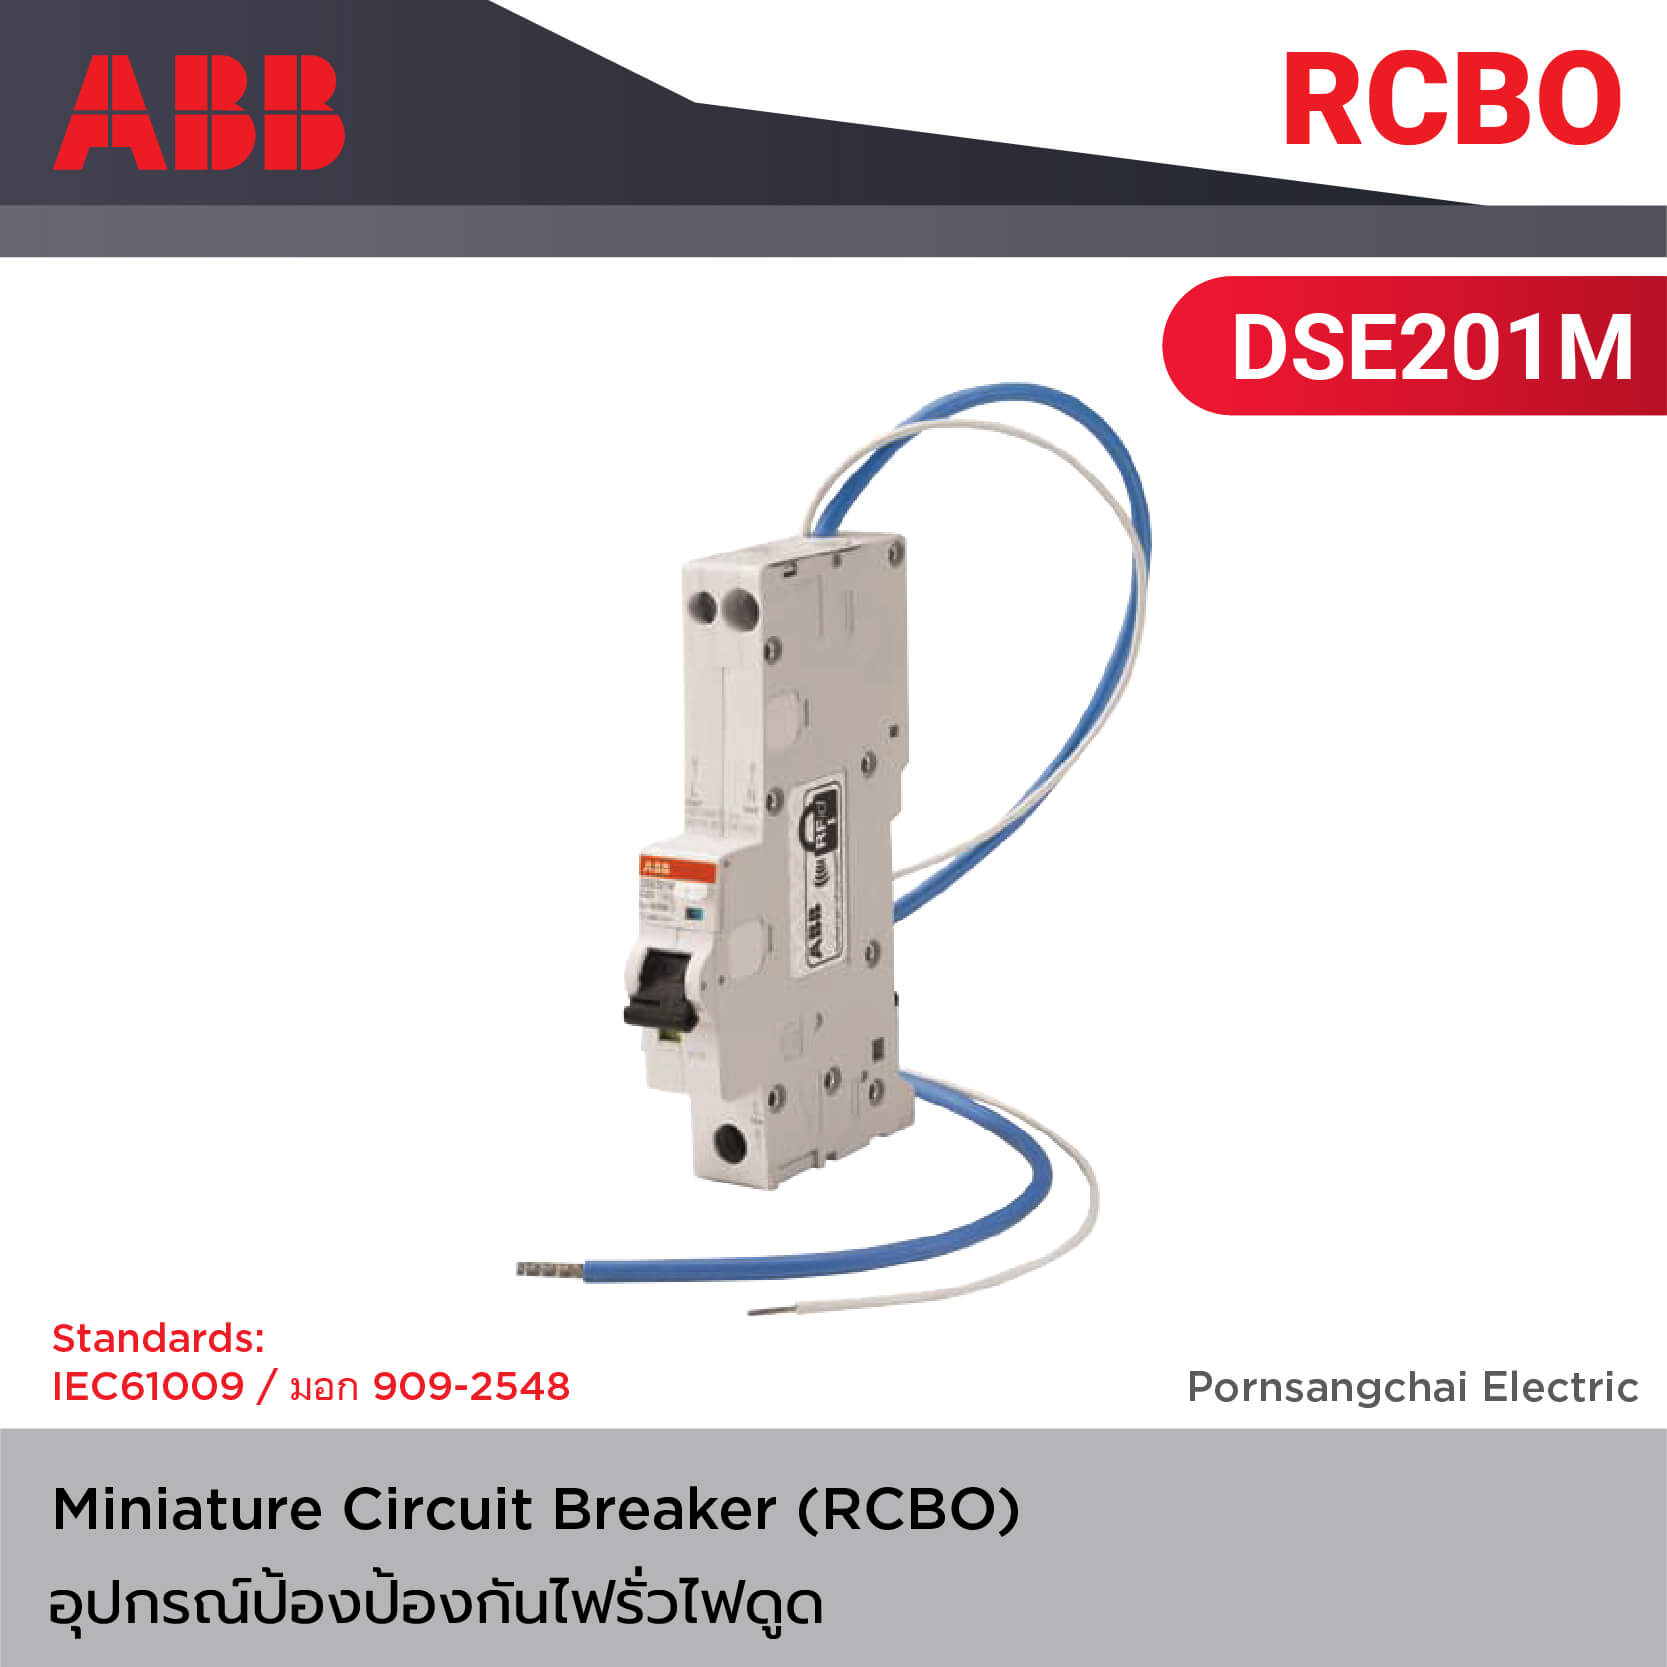 ABB เบรกเกอร์ป้องกันไฟรั่วไฟดูด MCB (RCBO) รุ่น DSE201M